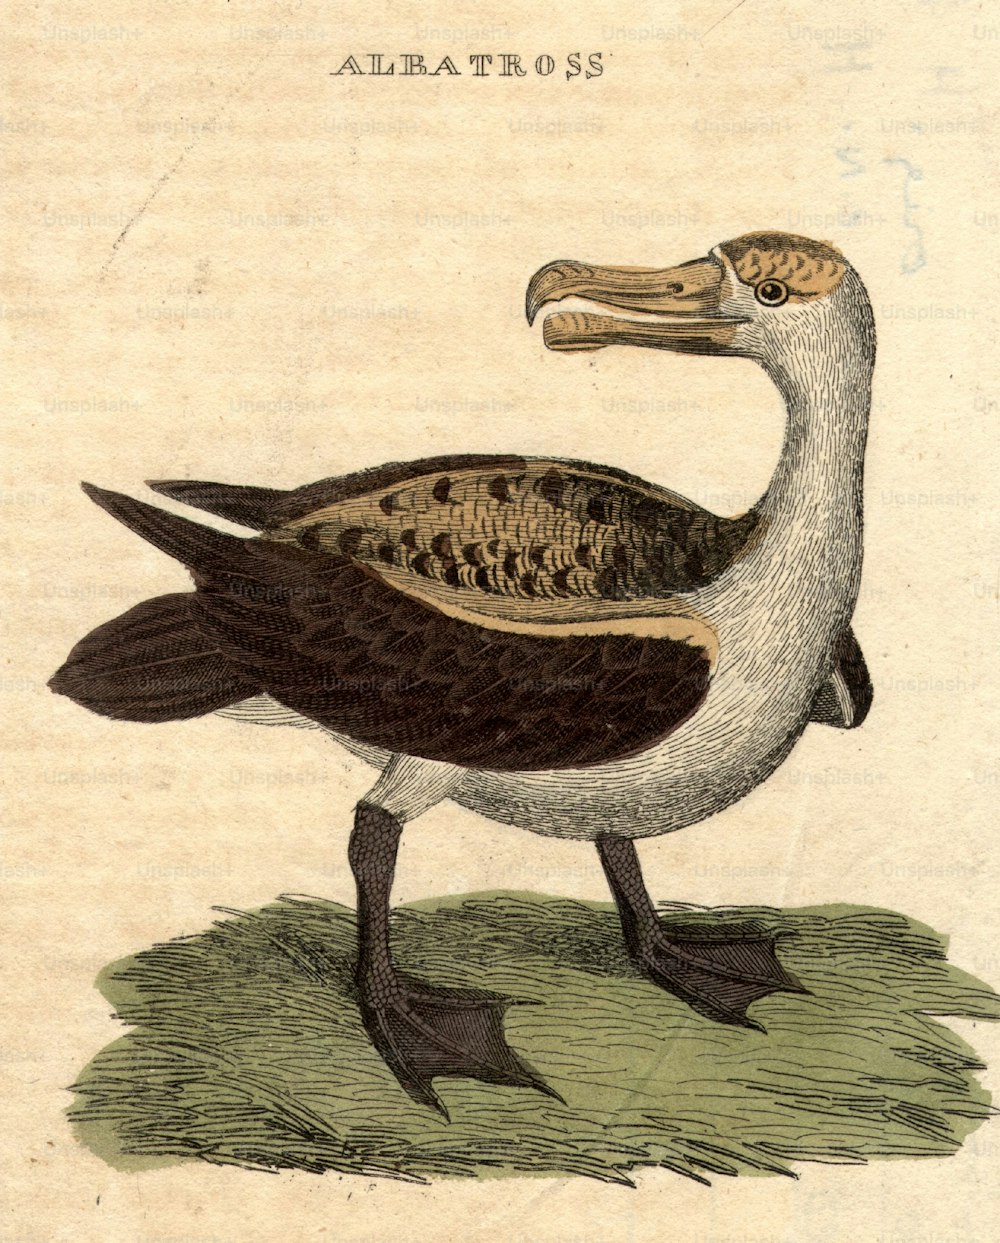 vers 1800 : Un albatros, un oiseau de mer aux grandes ailes capable de longs vols.  (Photo de Hulton Archive/Getty Images)